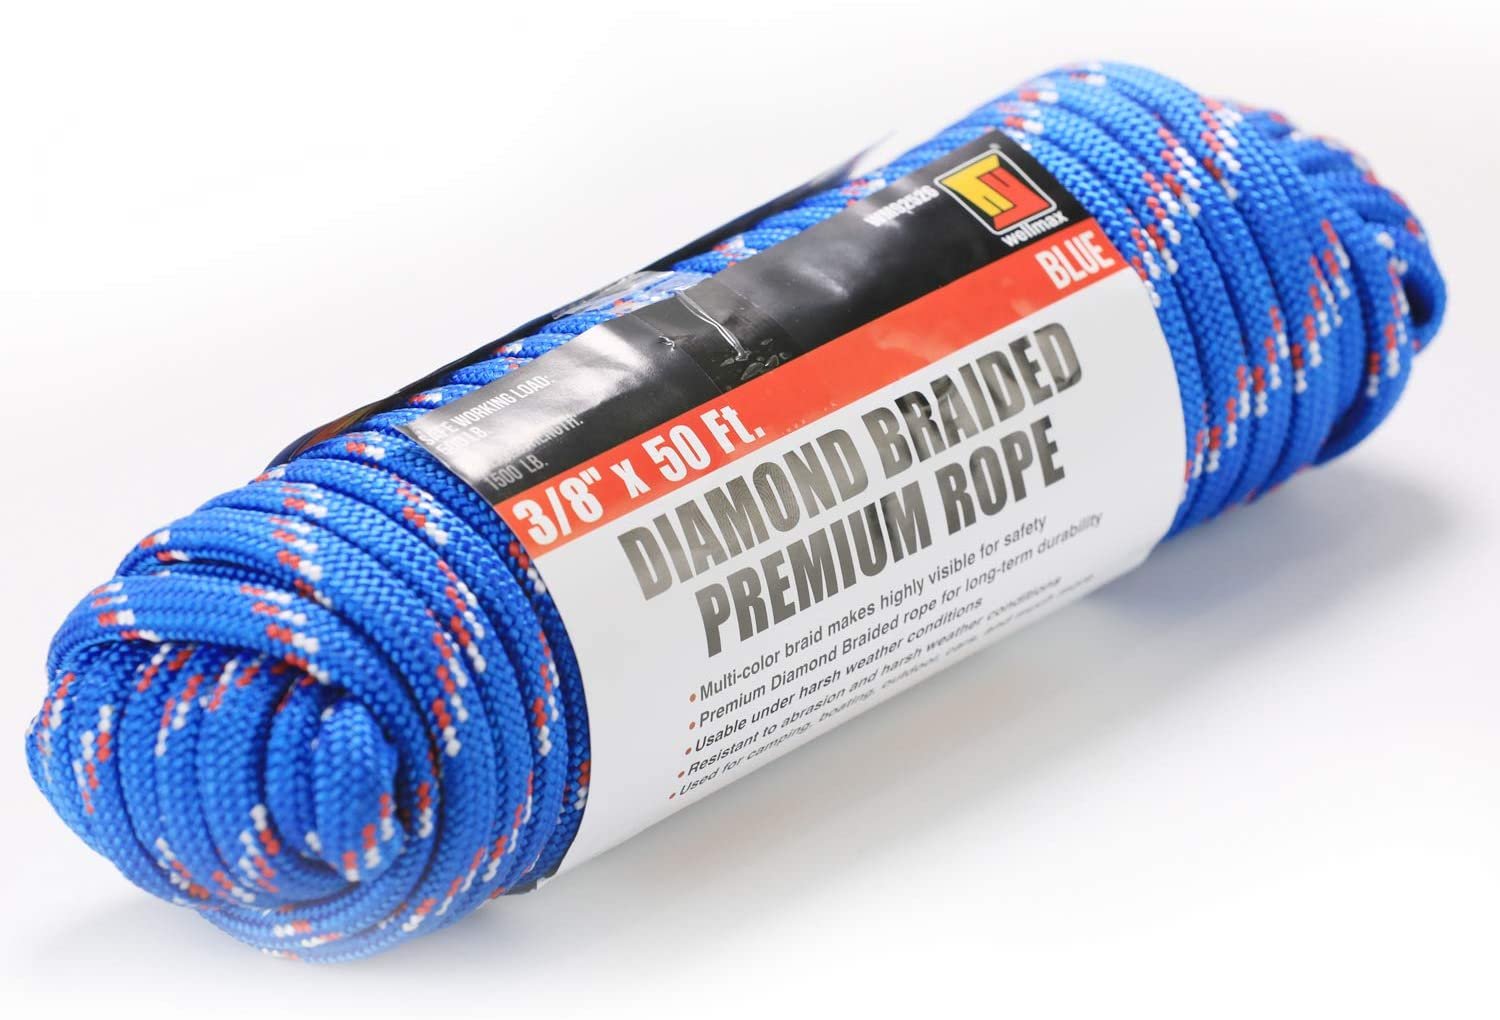 Diamond Braid PolyPro Rope - Miami Cordage